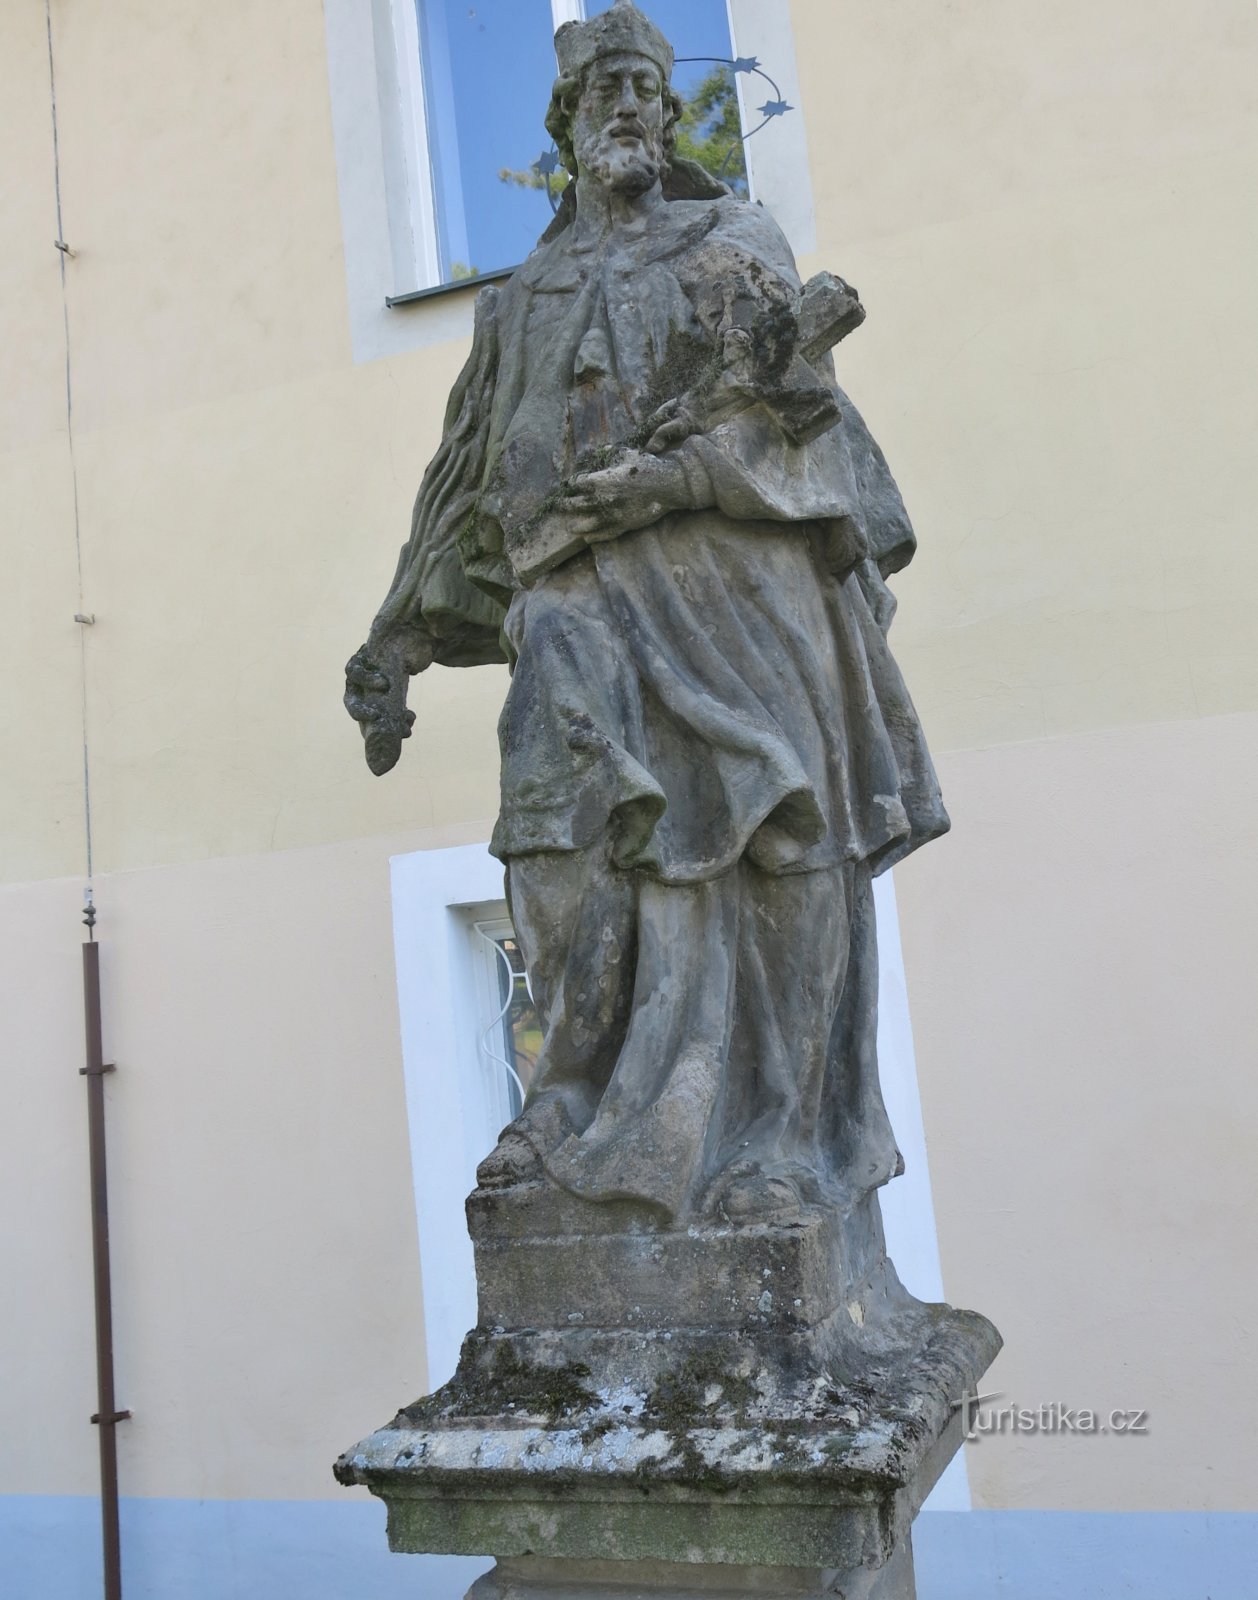 Stádlec - statue of St. Jan Nepomucký